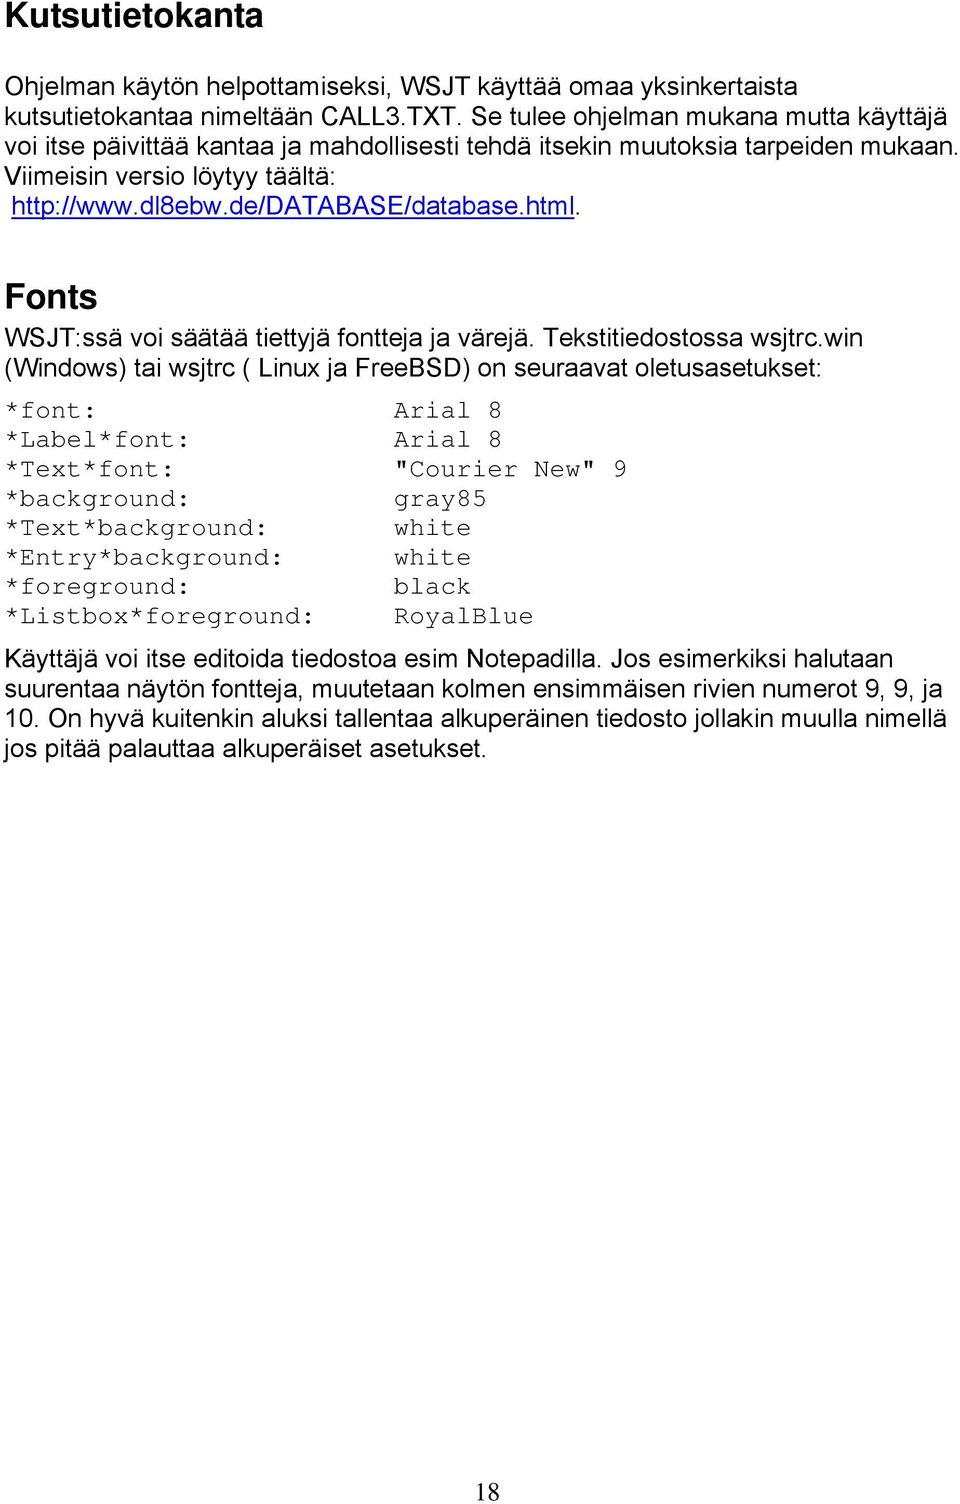 html. Fonts WSJT:ssä voi säätää tiettyjä fontteja ja värejä. Tekstitiedostossa wsjtrc.